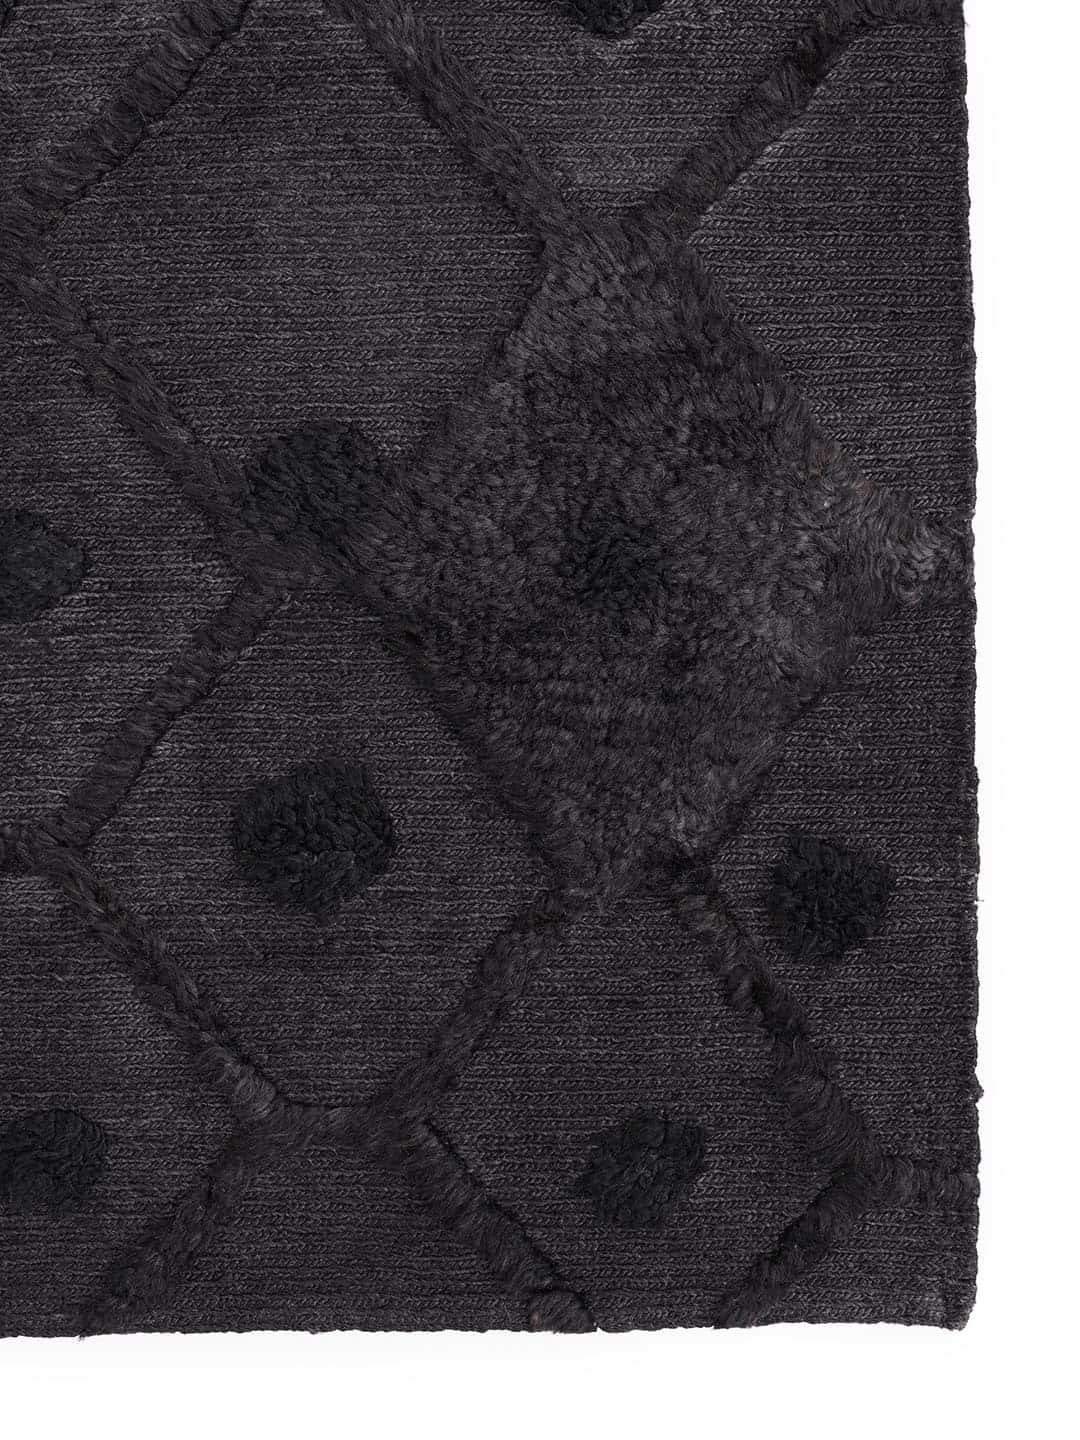 Скаднинавский ковер Massimo Bur-Bur черного цвета